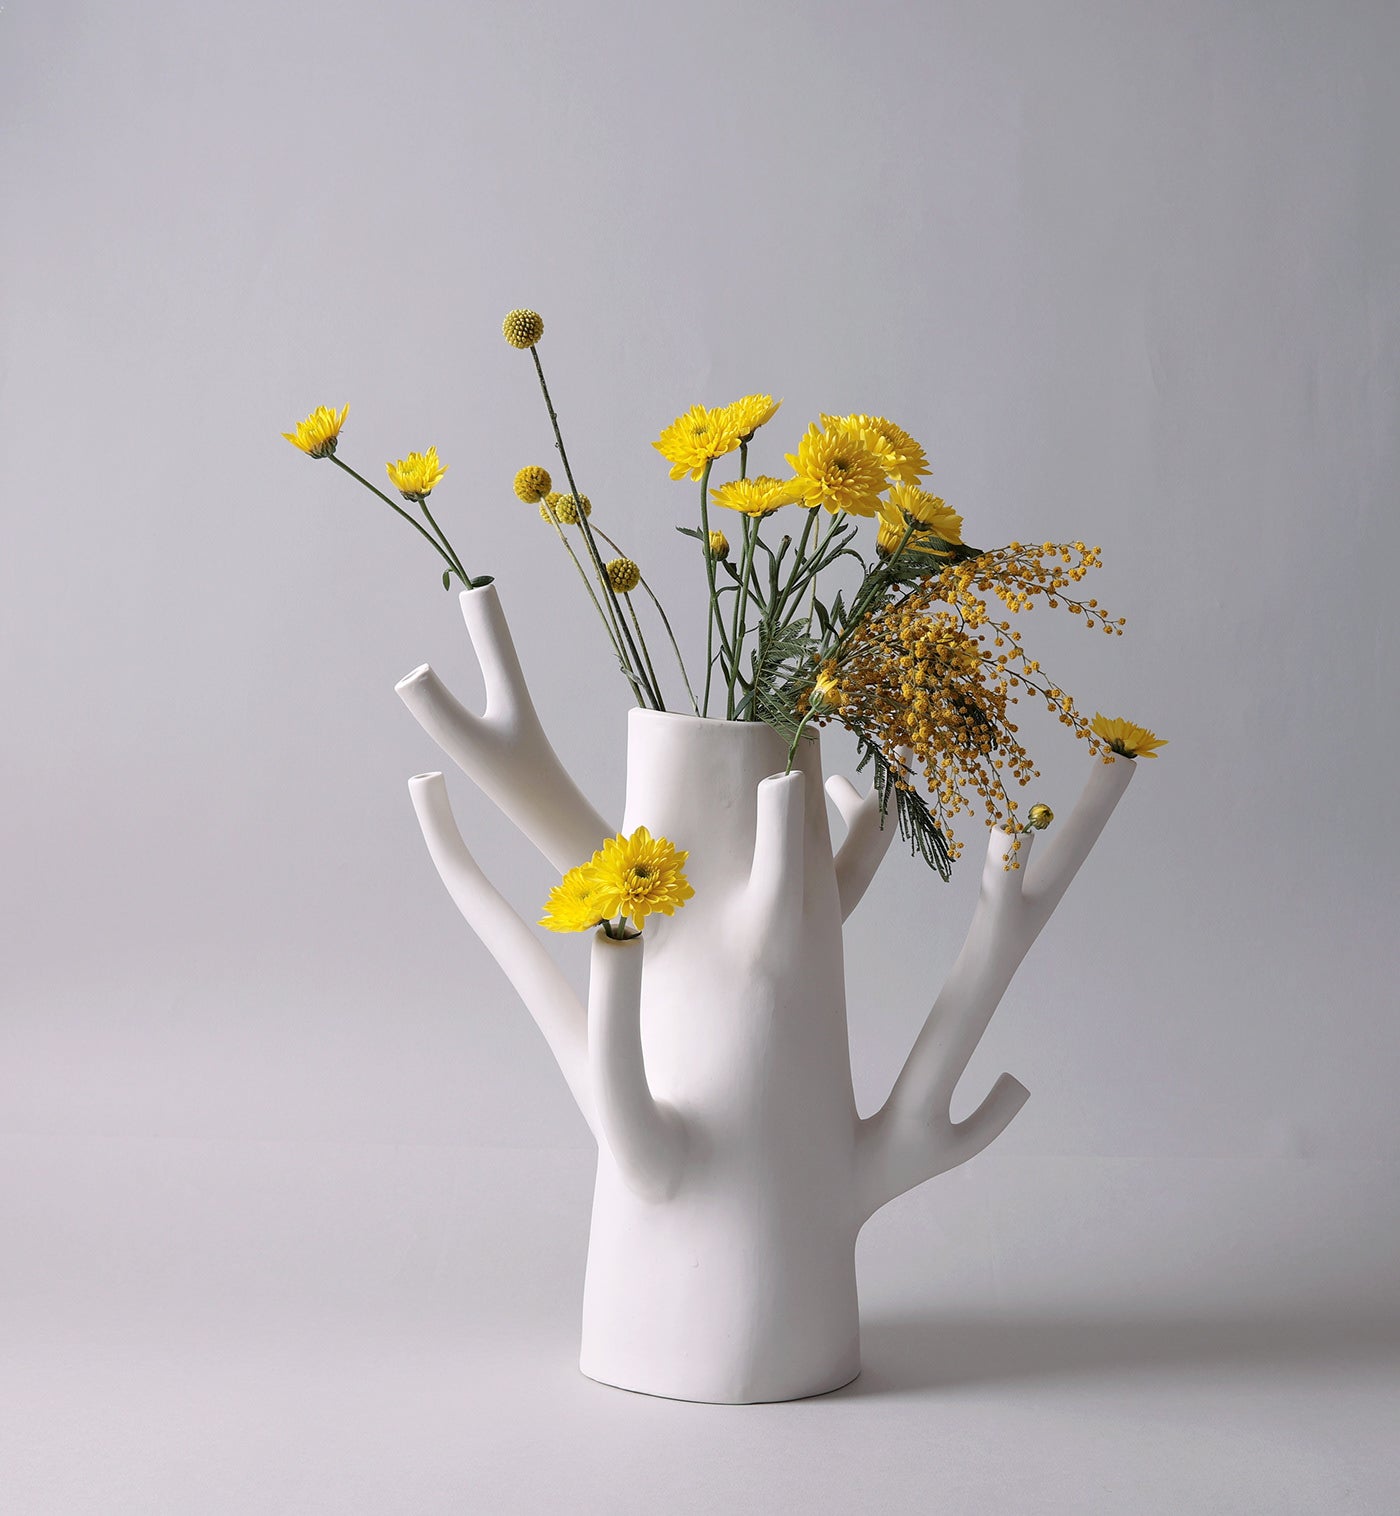 Vores keramik vase er en frisk inspiration fra naturen